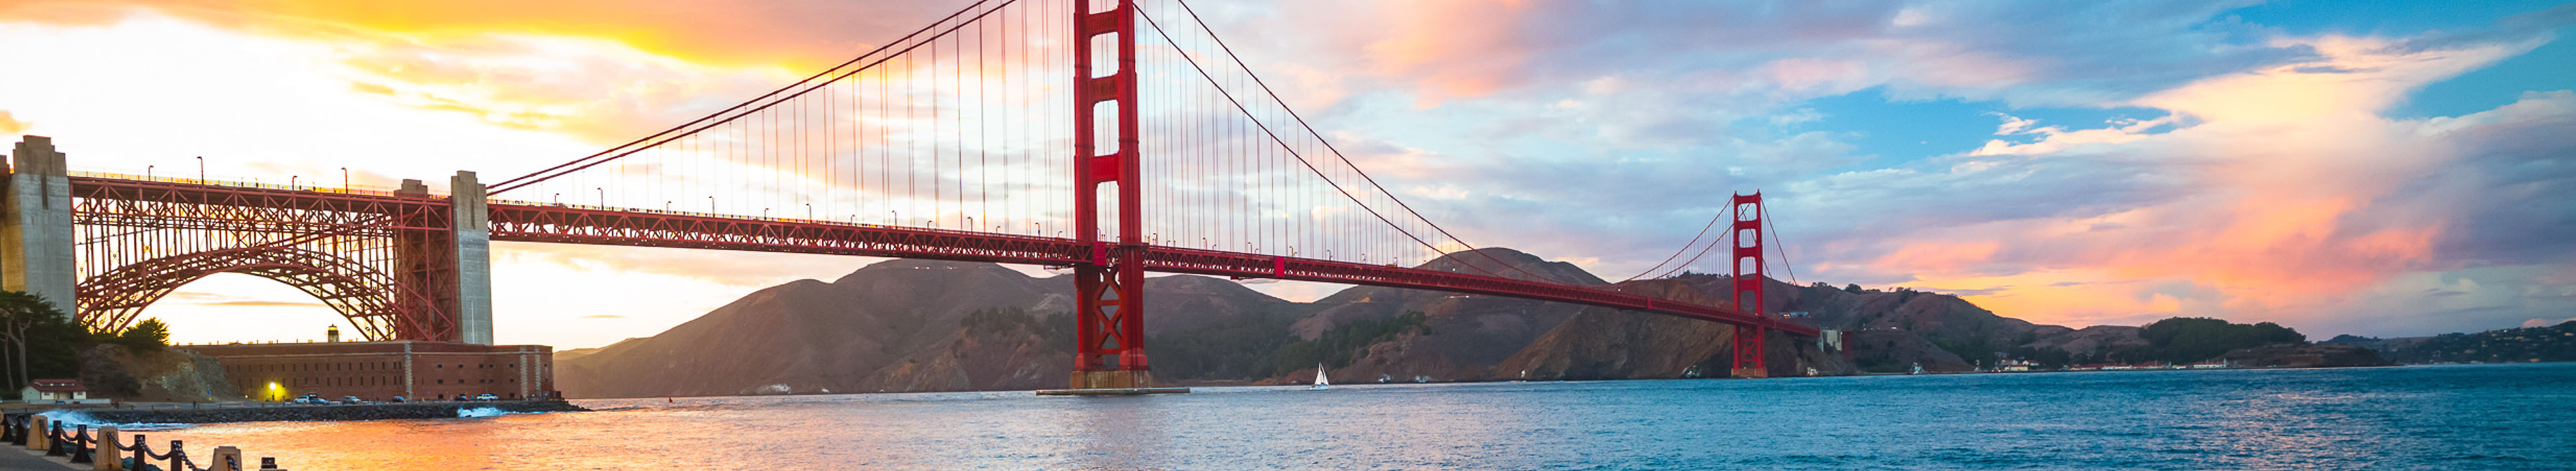 Ausblick von Fort Point auf die Golden Gate Bridge bei Sonnenuntergang, San Francisco.